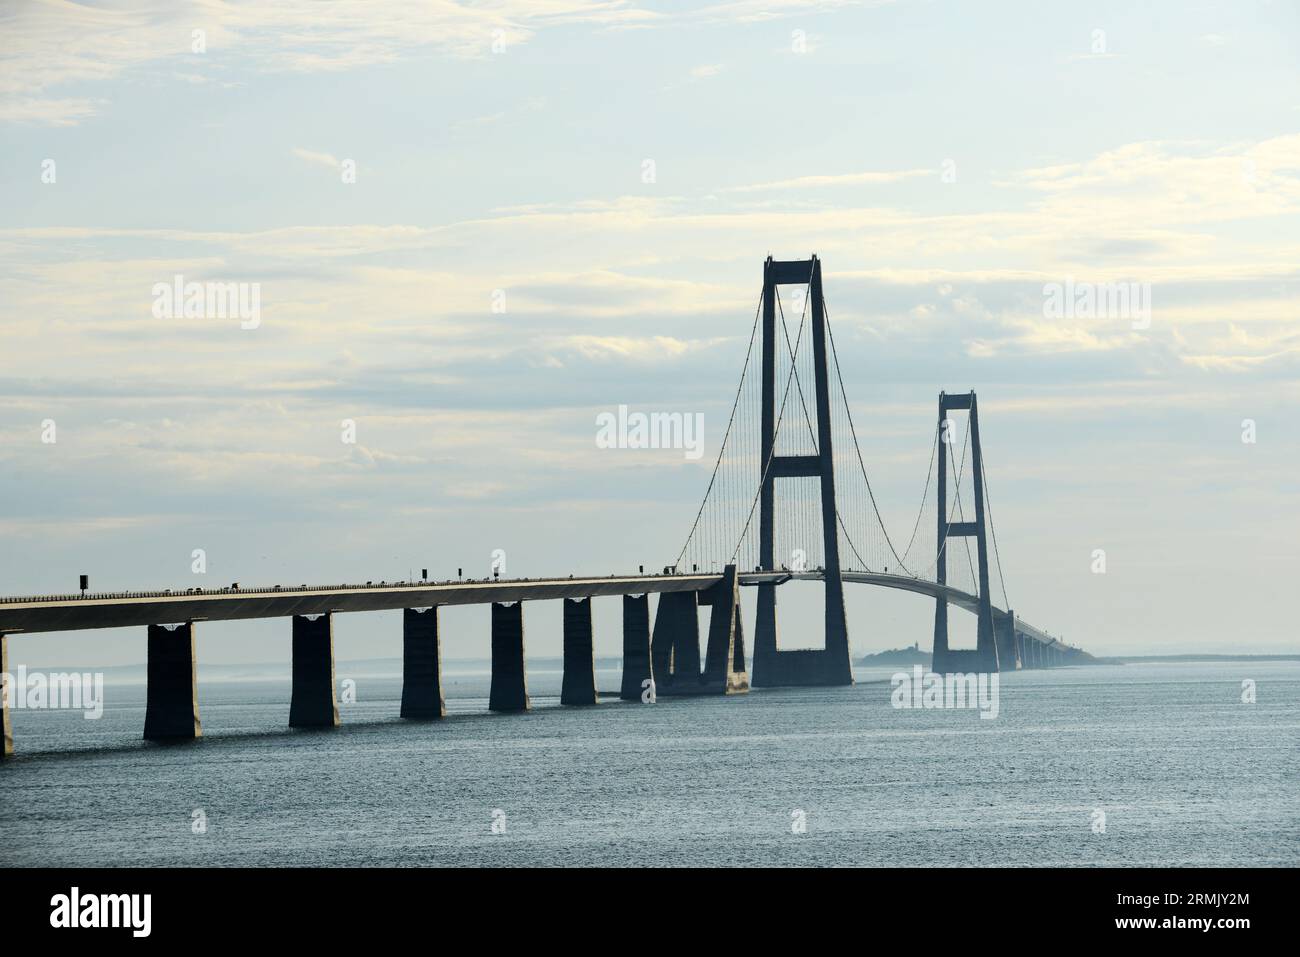 Vue sur le pont de la Grande ceinture ( Storebæltsbroen ) reliant les îles de Funen an Zealand au Danemark. Banque D'Images